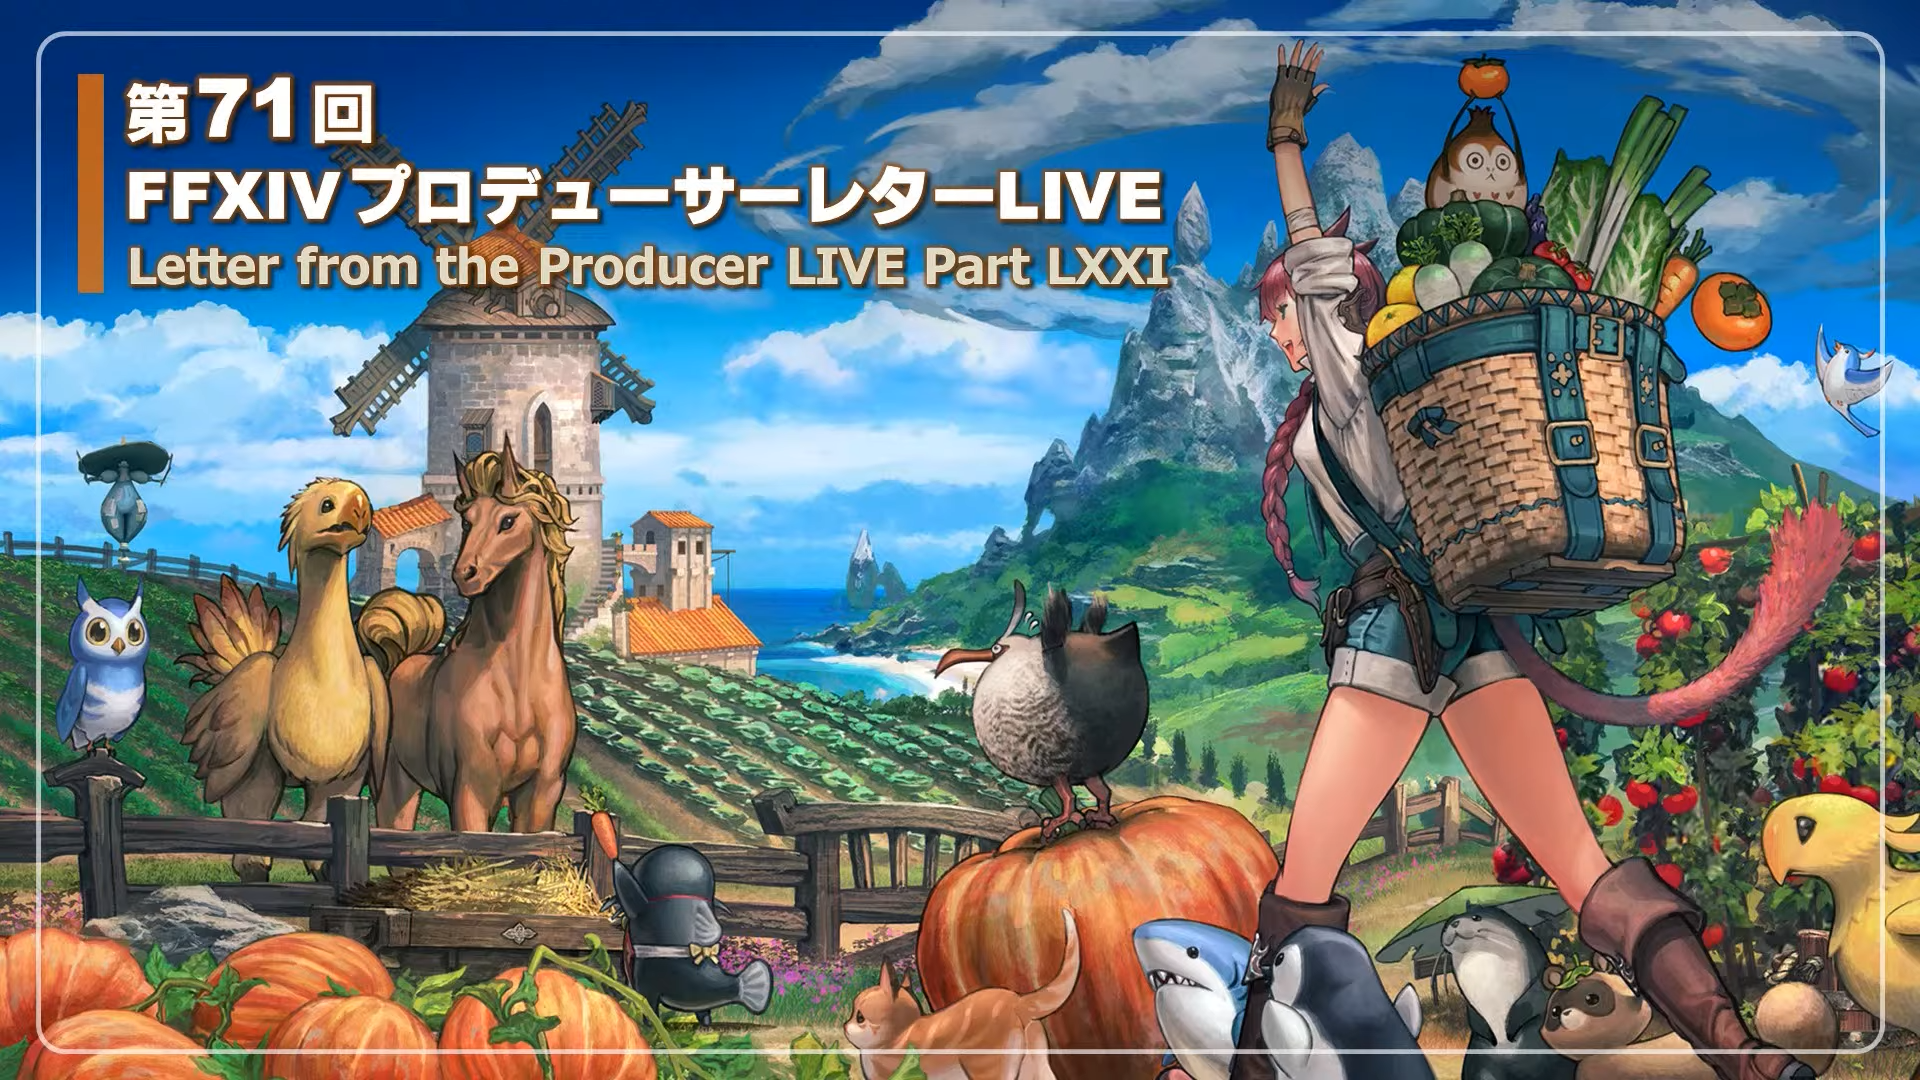 Final Fantasy XIV FFXIV recibirá un modo de simulación de granja isla santuario en el parche 6.2